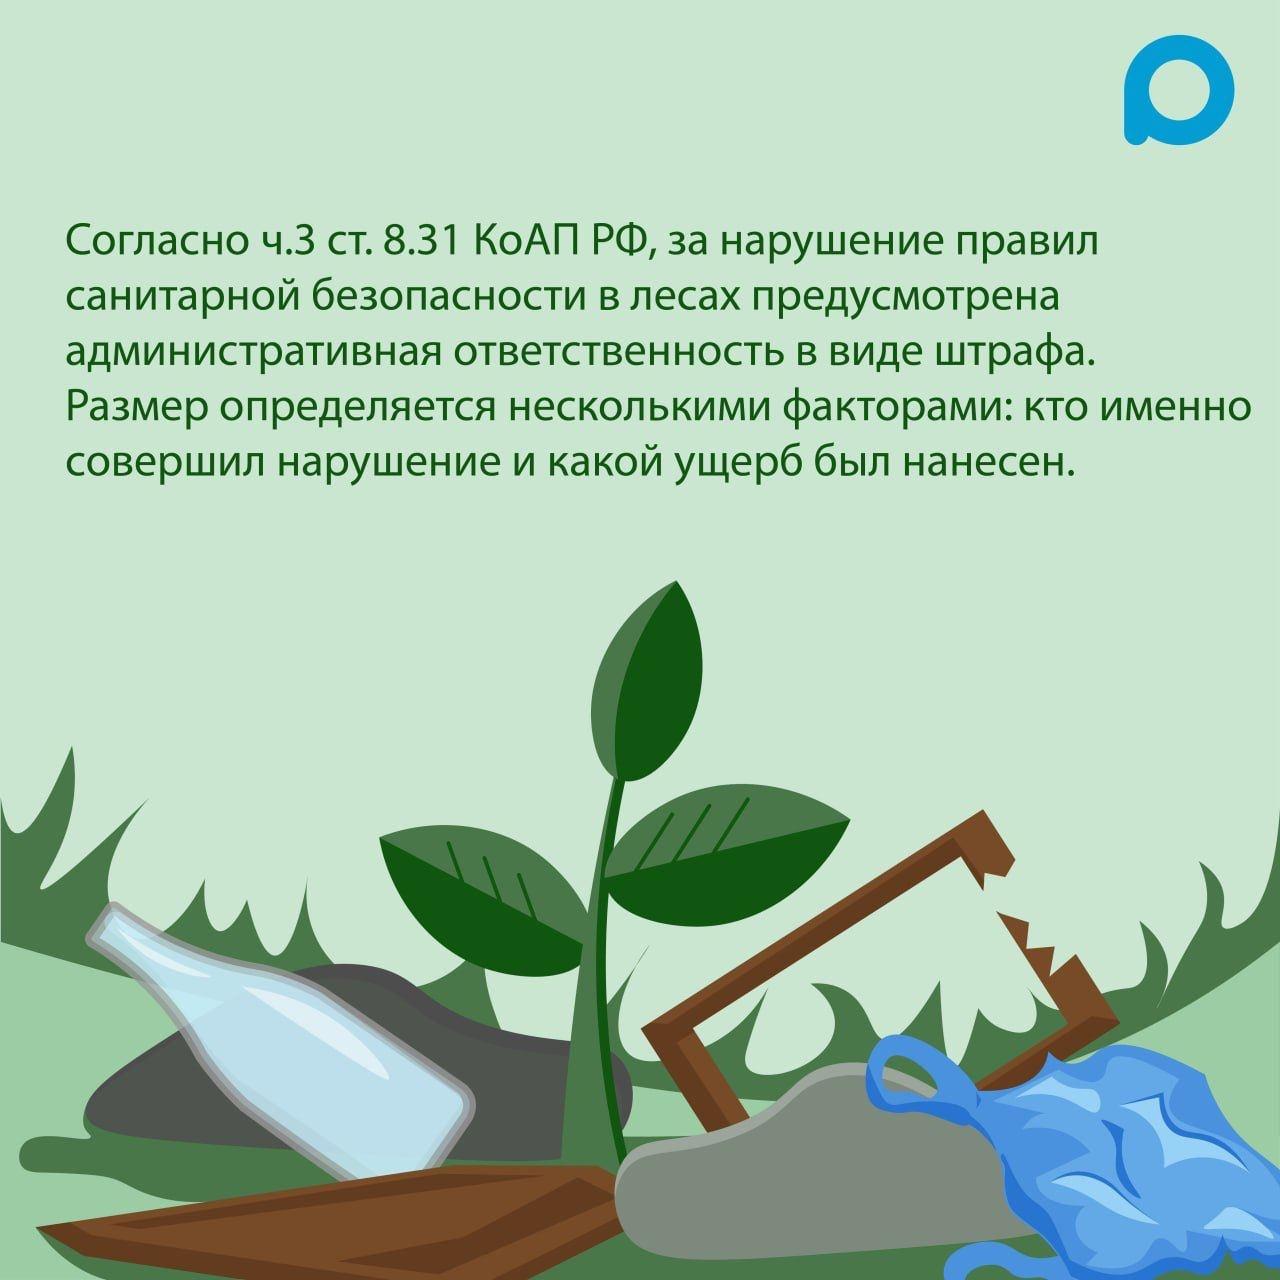 За выброс мусора в лесах и водоохранных зонах предусмотрена административная ответственность в виде штрафа: +7 (499) 009-01-02, зеленоград-инфо.рф